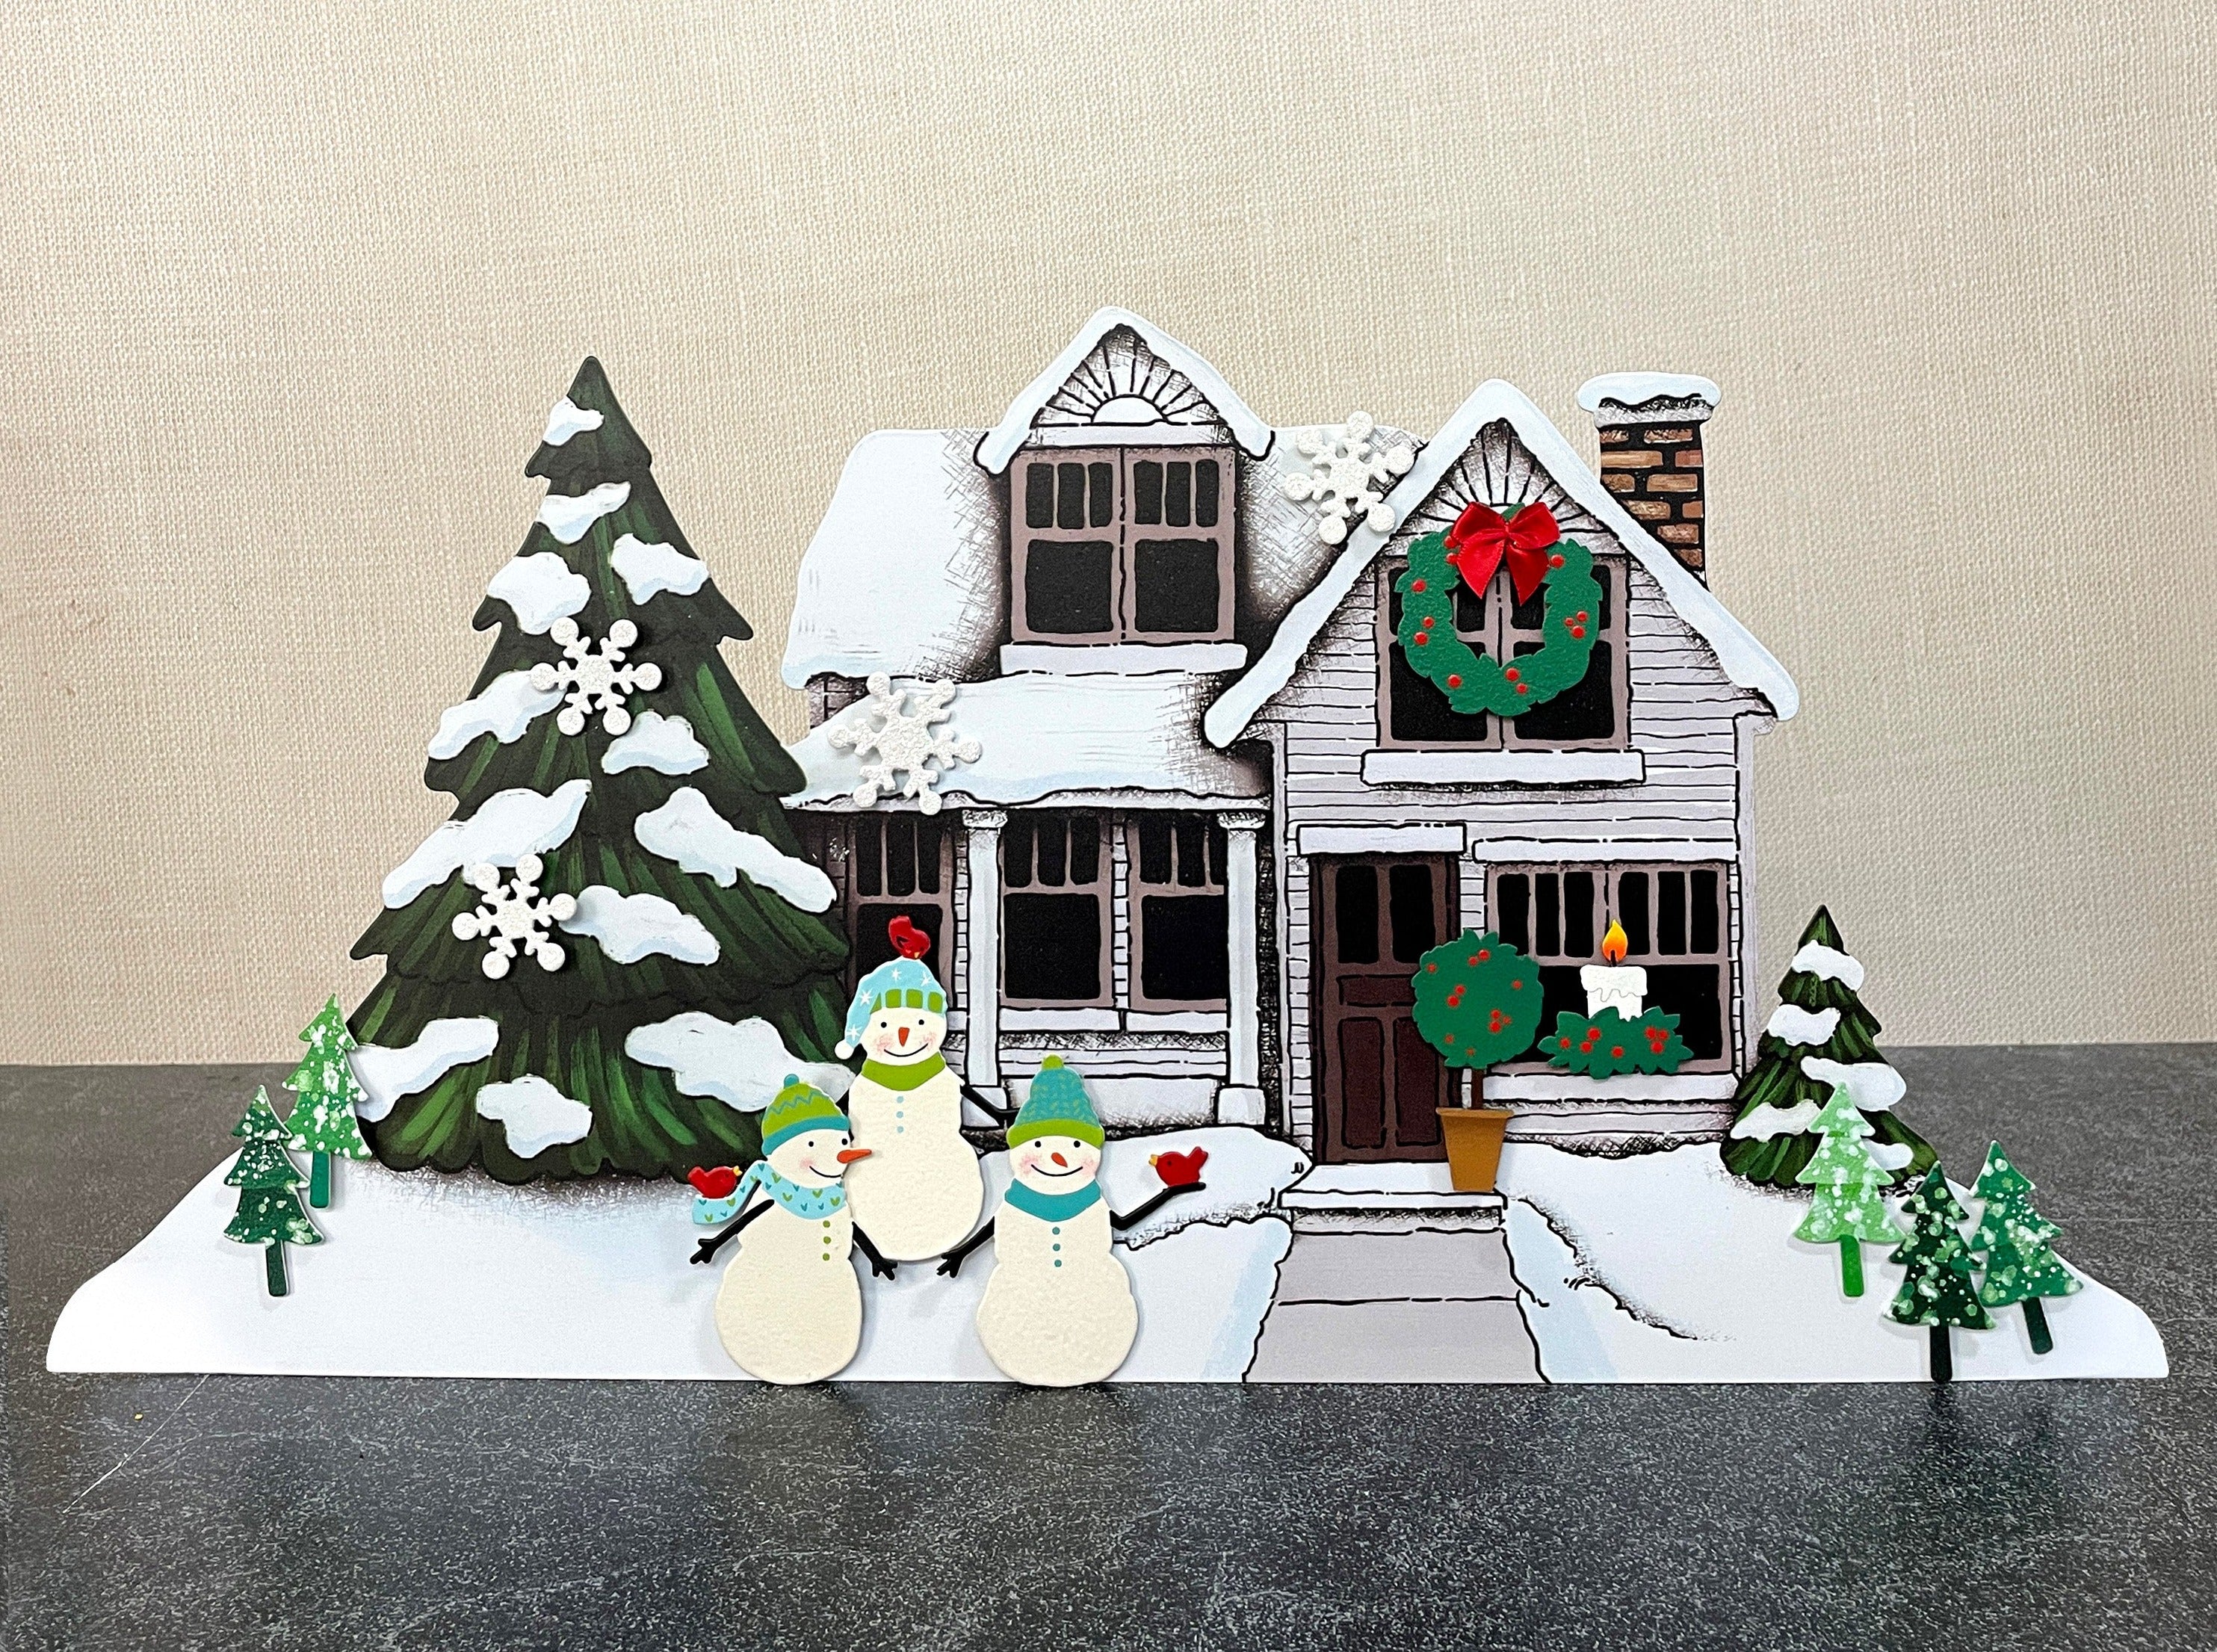 Magnetic Art Scene - Winter House